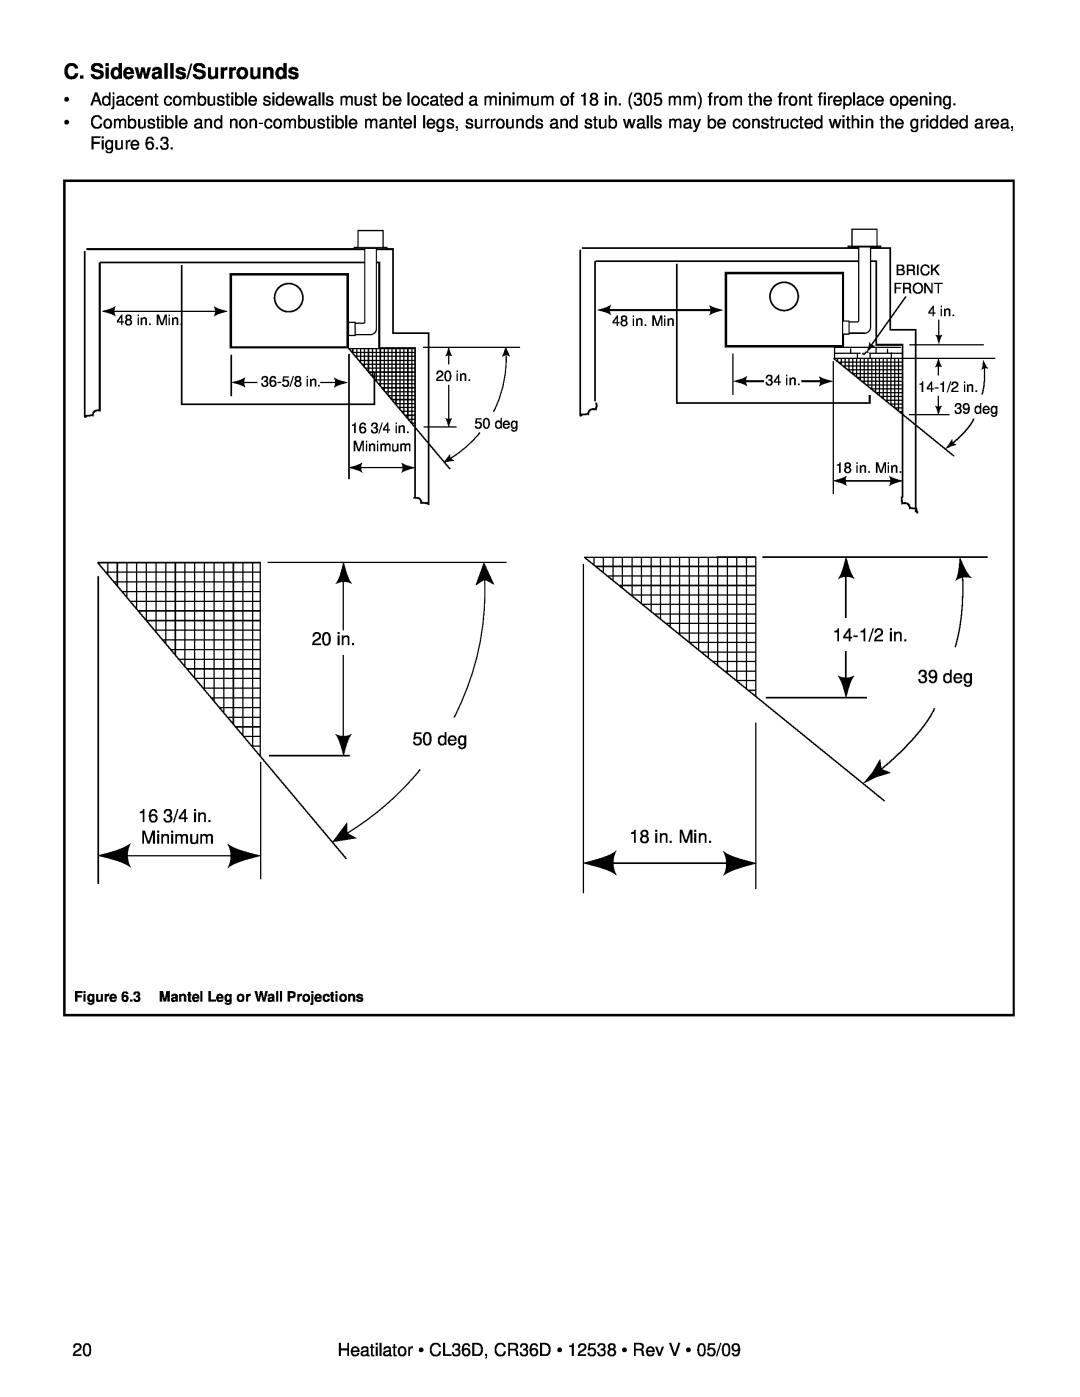 Heatiator CR36D, CL36D owner manual C. Sidewalls/Surrounds, 20 in, 39 deg, 50 deg, 16 3/4 in, 18 in. Min, Minimum 